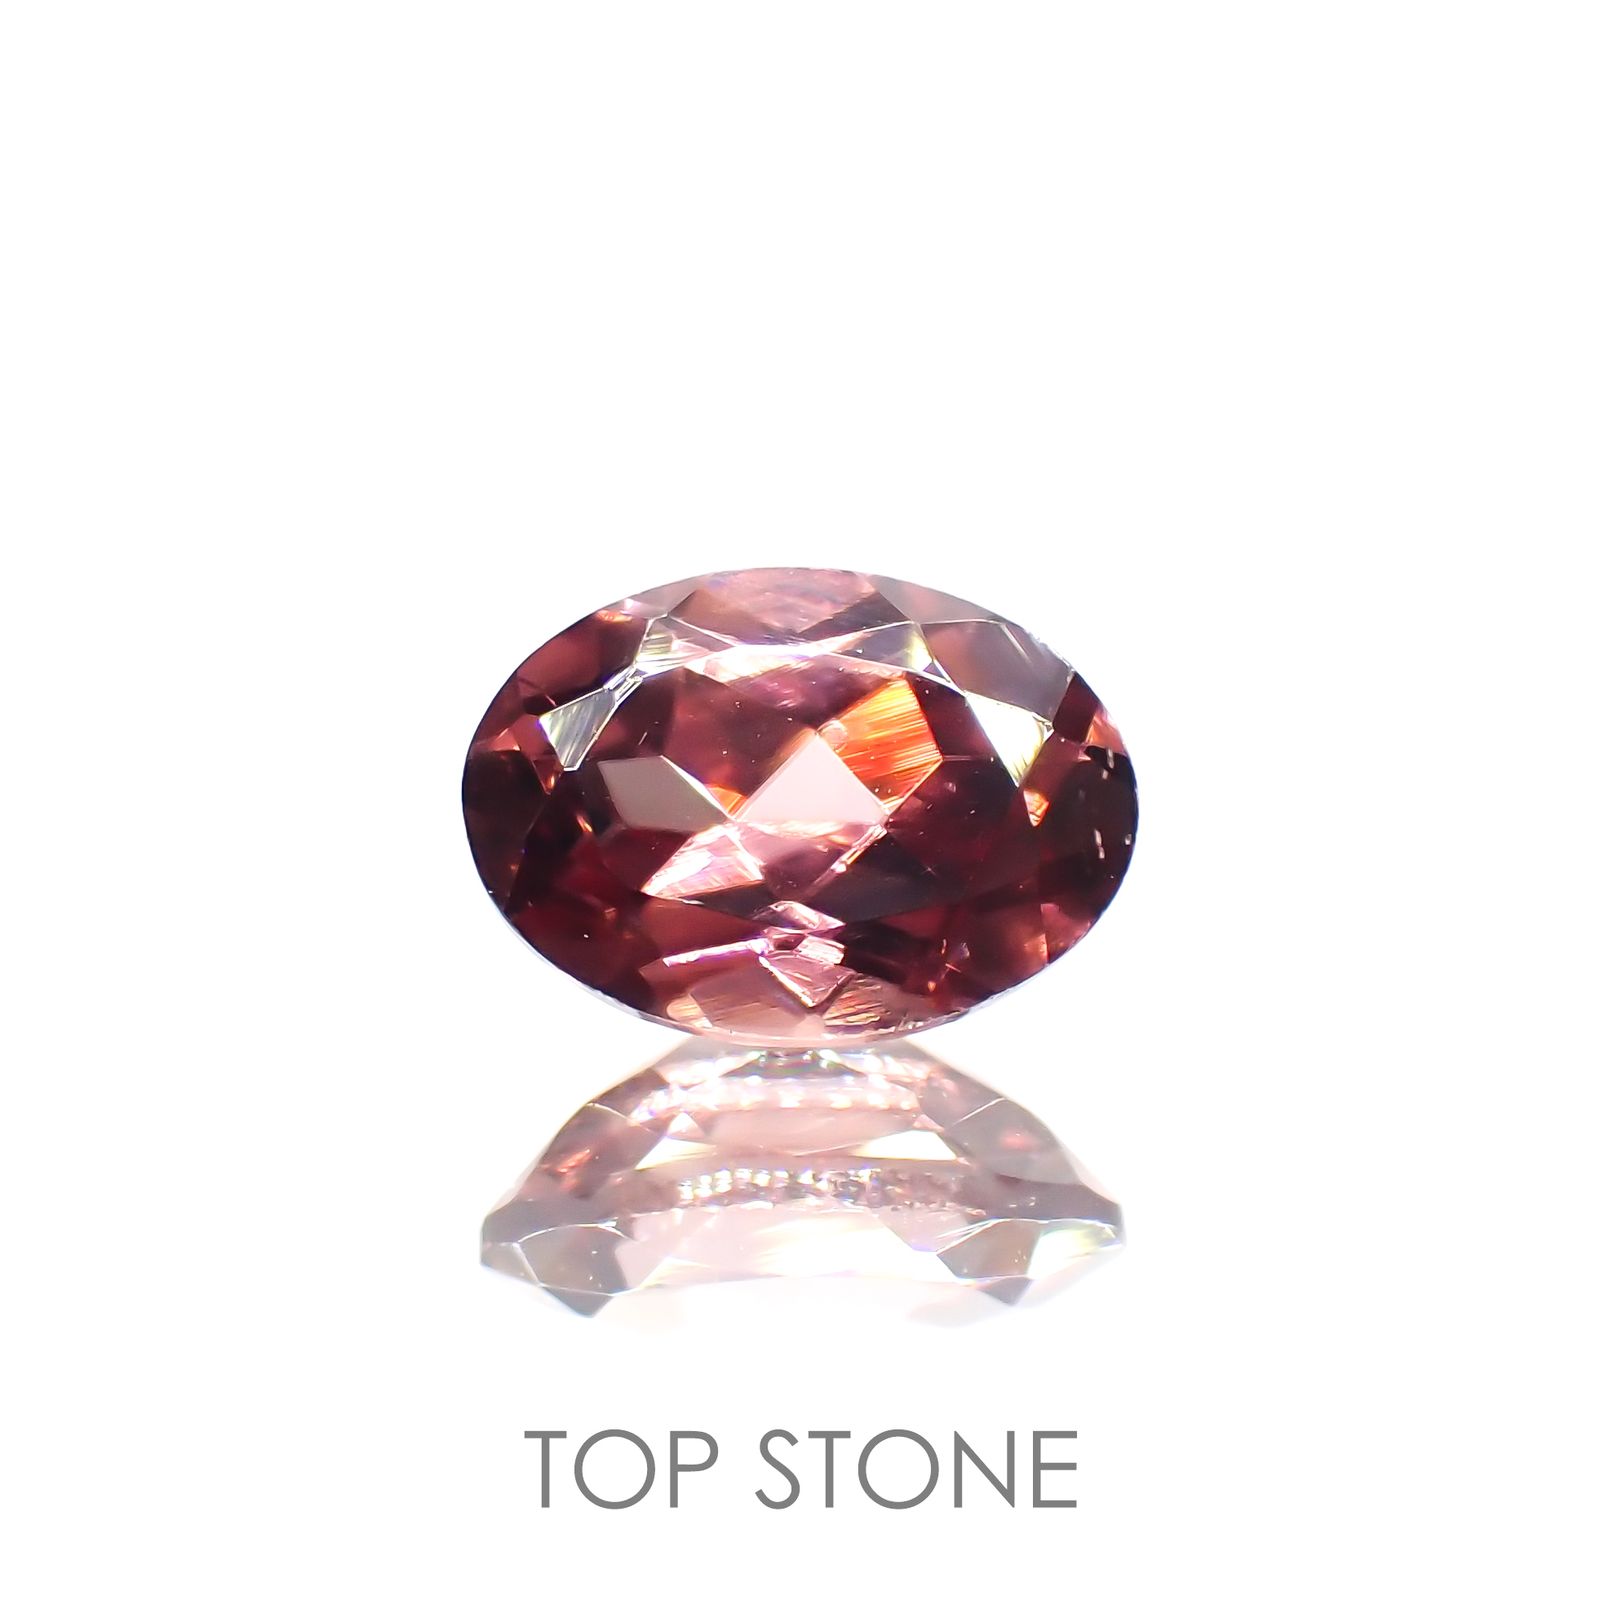 ピンクジルコン 宝石名ジルコン スリランカ カンボジア産 1 17ct 識別済 7 1 5 1mm前後 Top Stone トップストーン